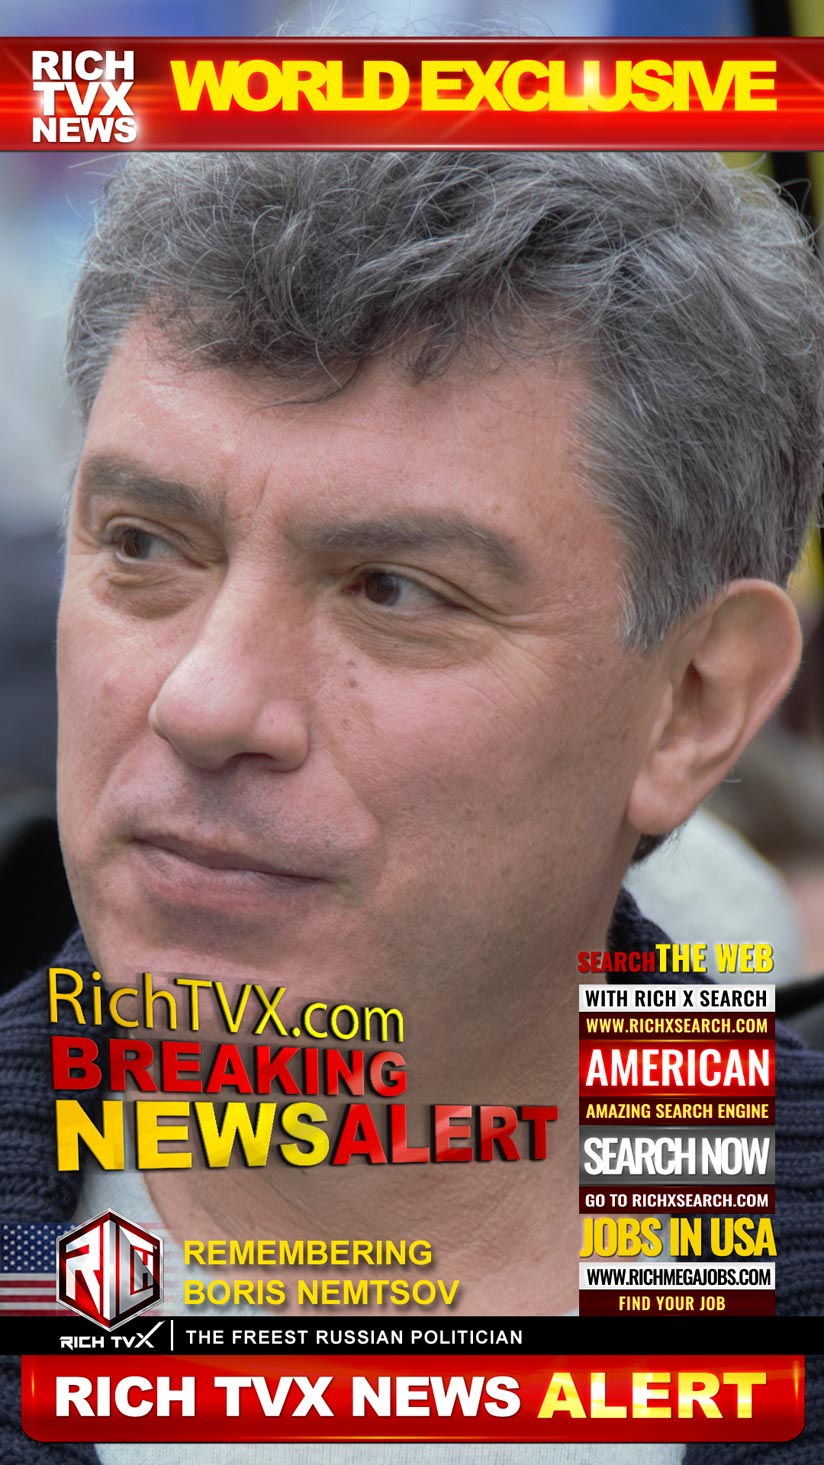 Remembering Boris Nemtsov: The Freest Russian Politician